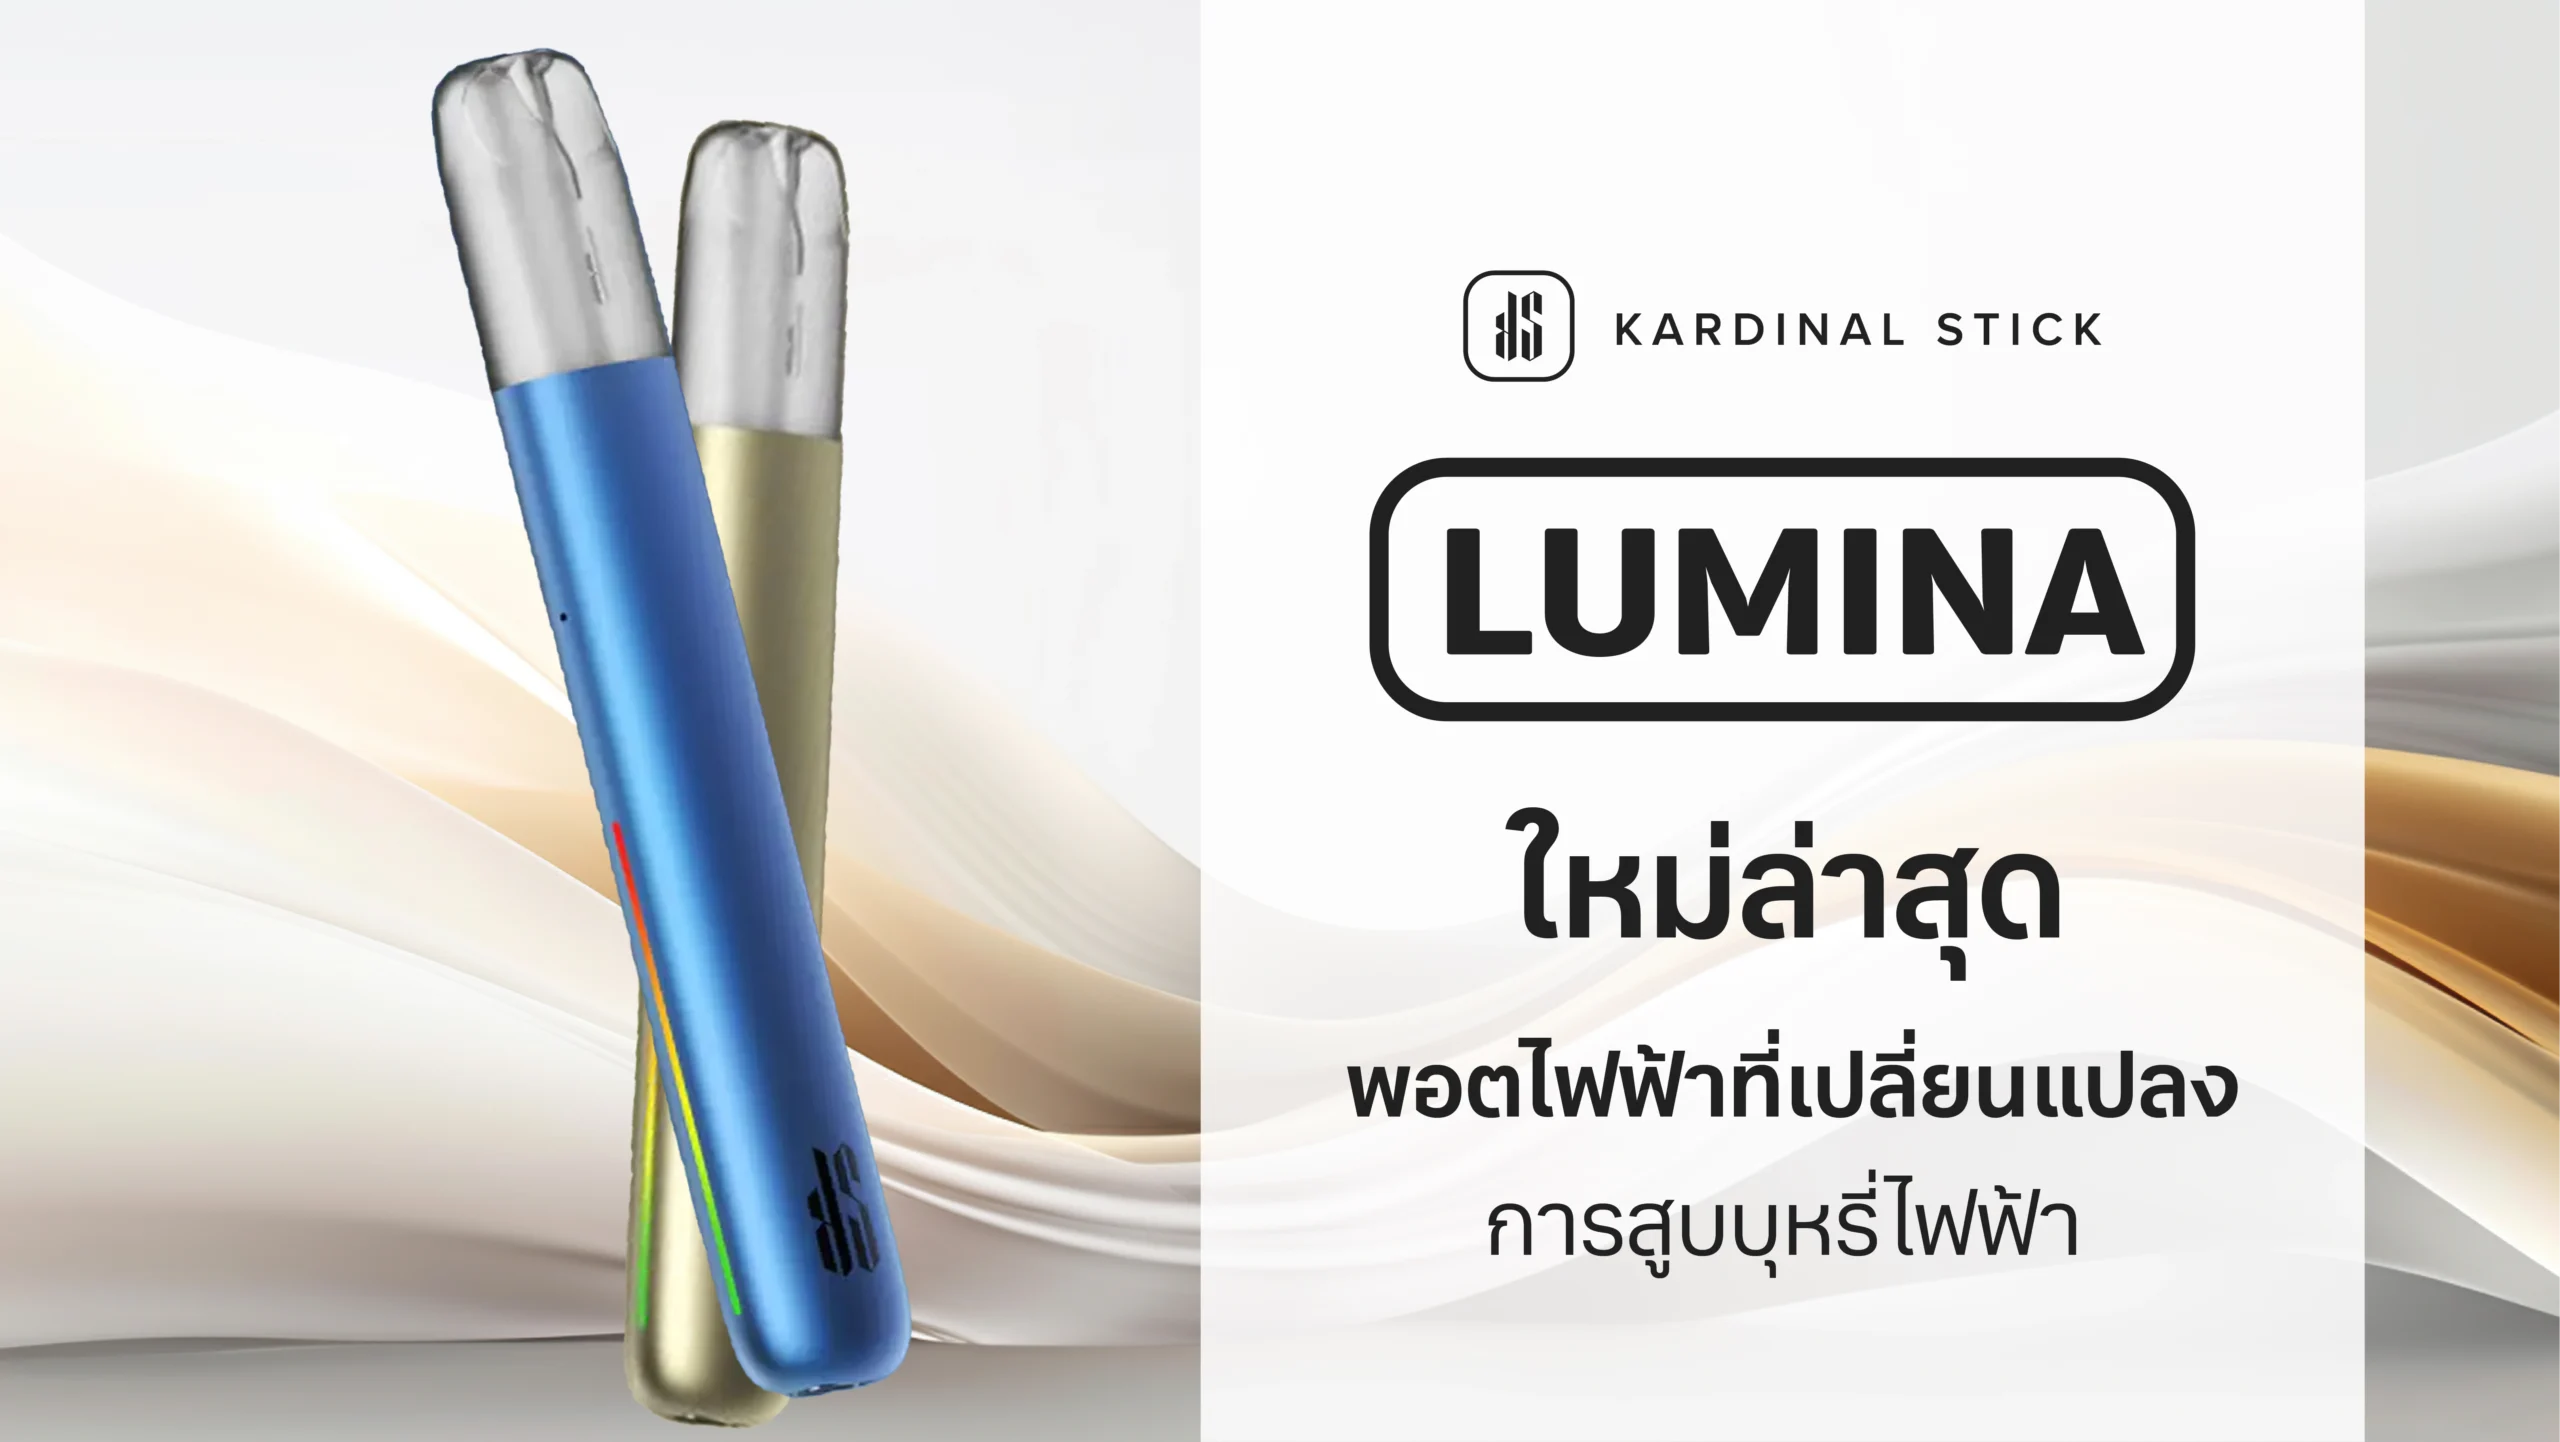 KS Lumina ใหม่ล่าสุด พอตไฟฟ้าที่เปลี่ยนแปลงการสูบบุหรี่ไฟฟ้า